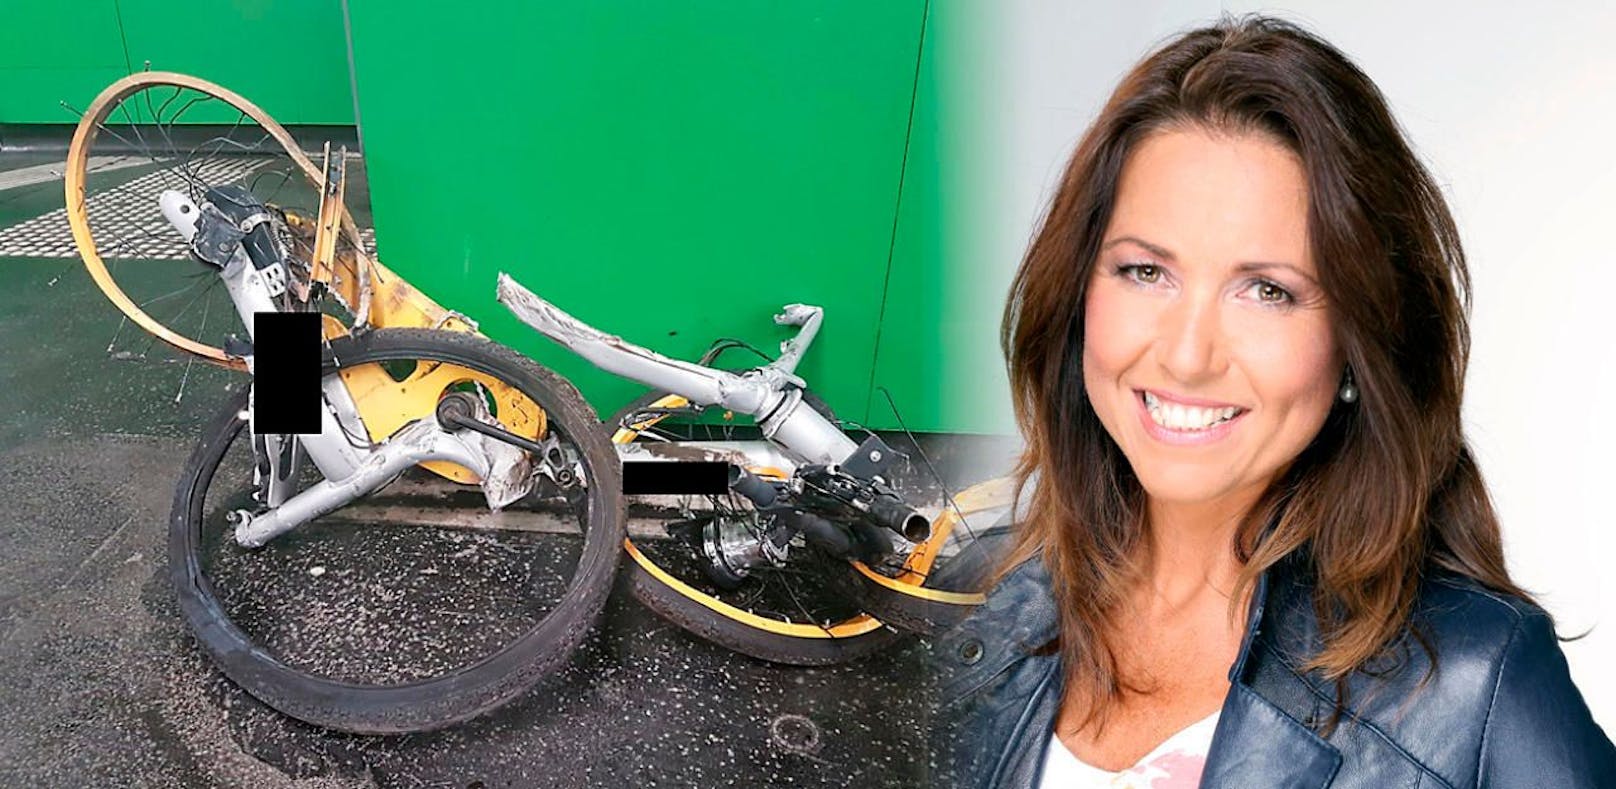 ÖAMTC-Verkehrspsychologin Marion Seidenberger nennt drei Gründe für die Aggression gegenüber Leihrädern.